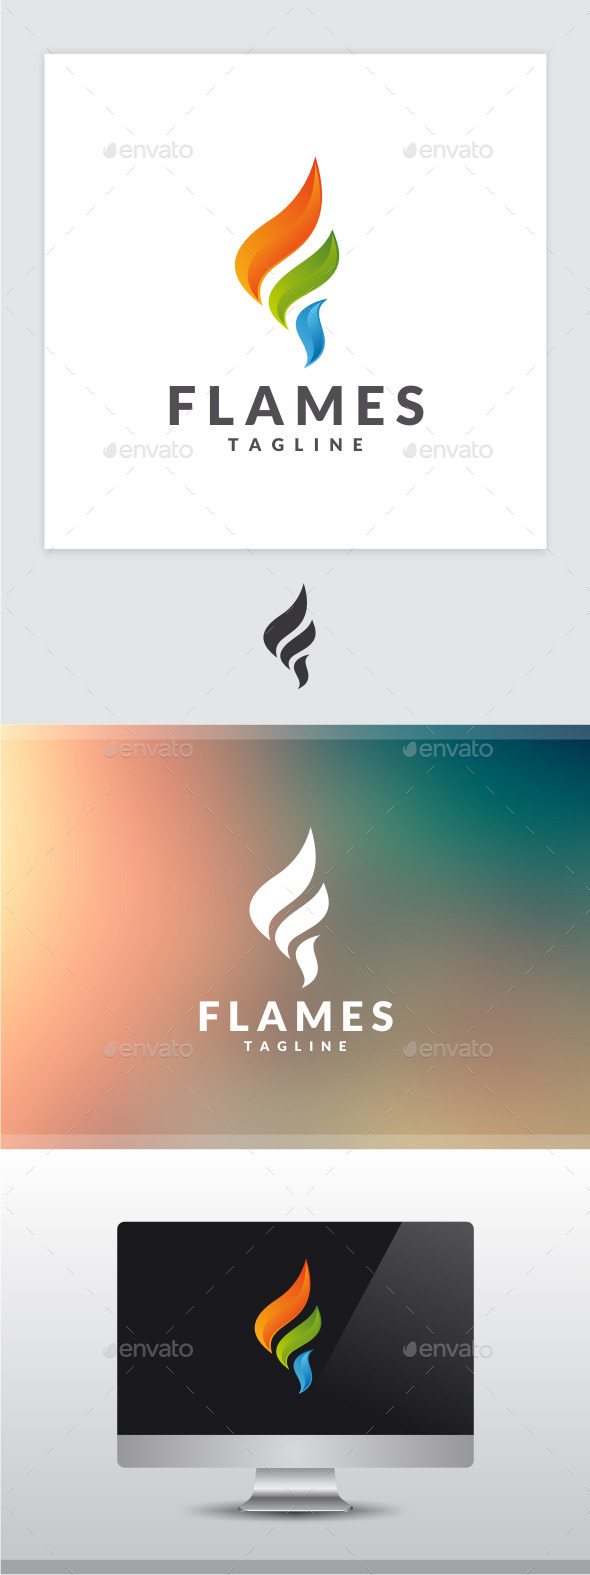 Flames - Letter F Logo